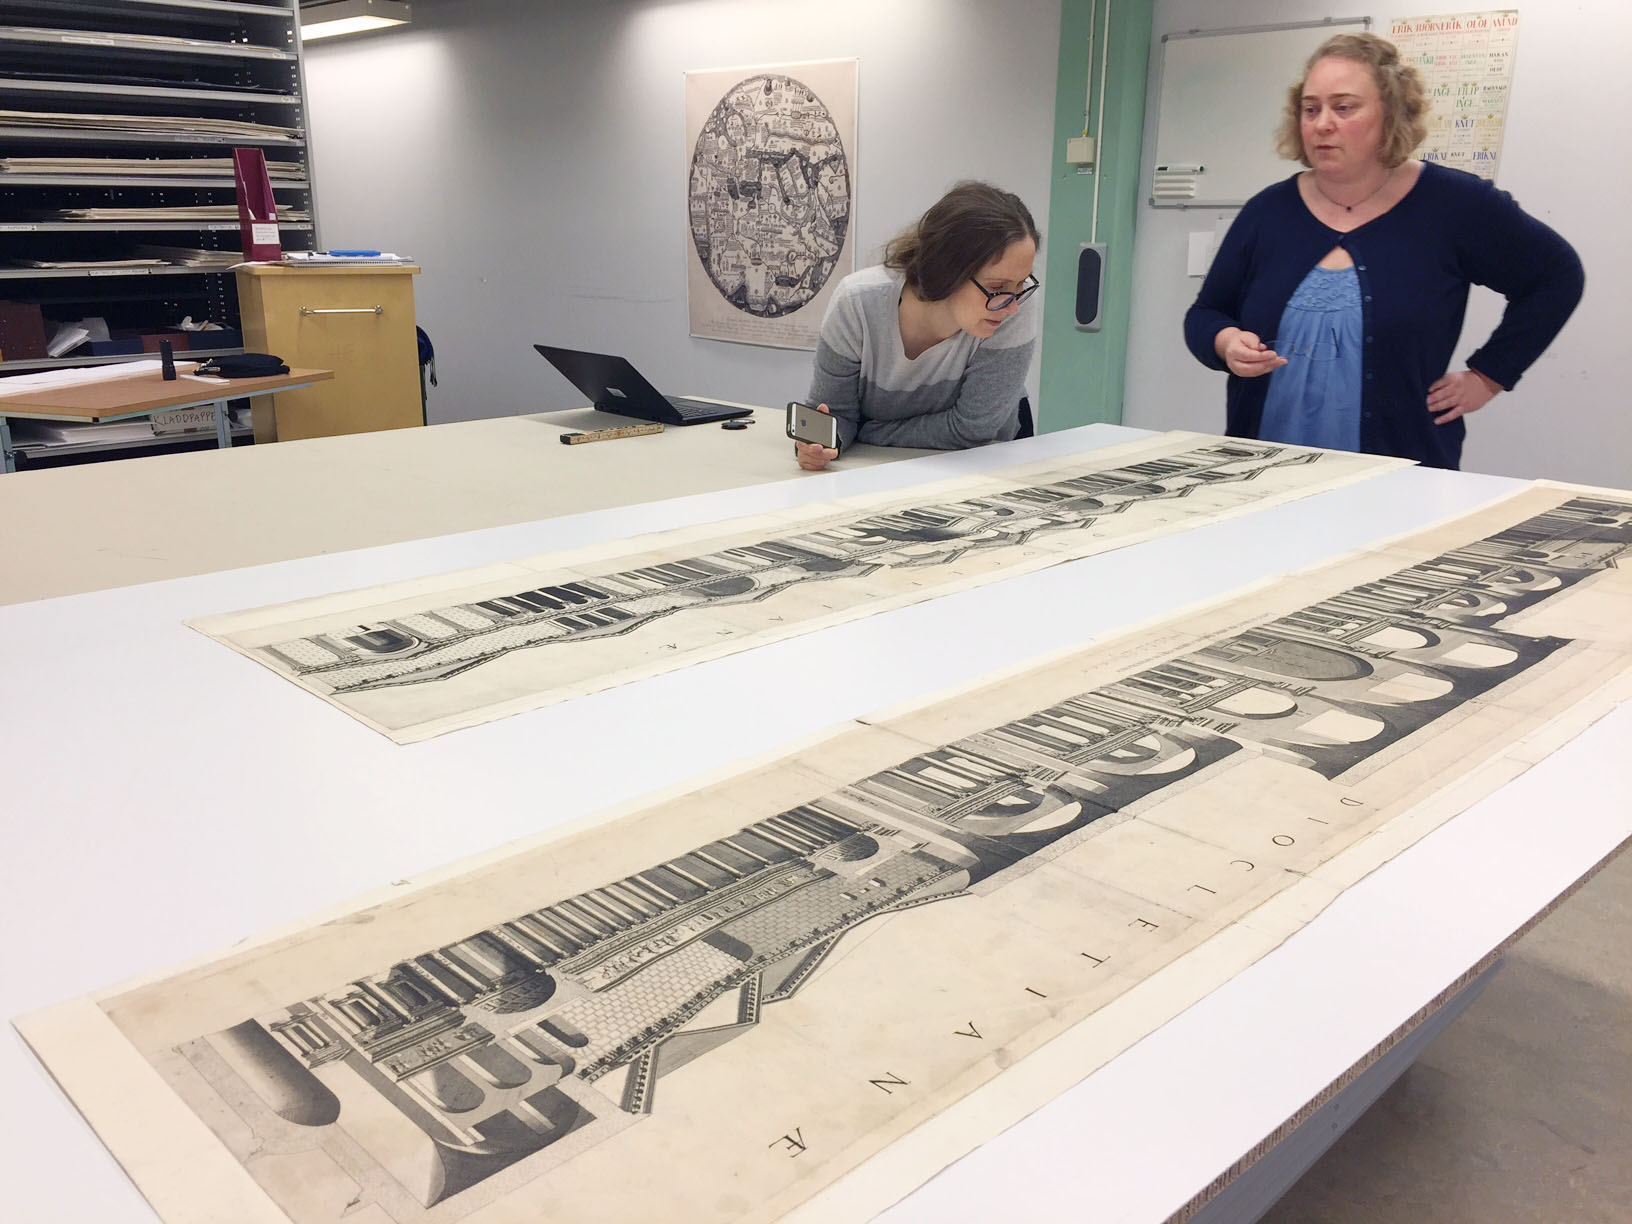 En konservator och en bibliotekarie tittar på två stora vyer ur samlingen Foto: Jens Östman, KB